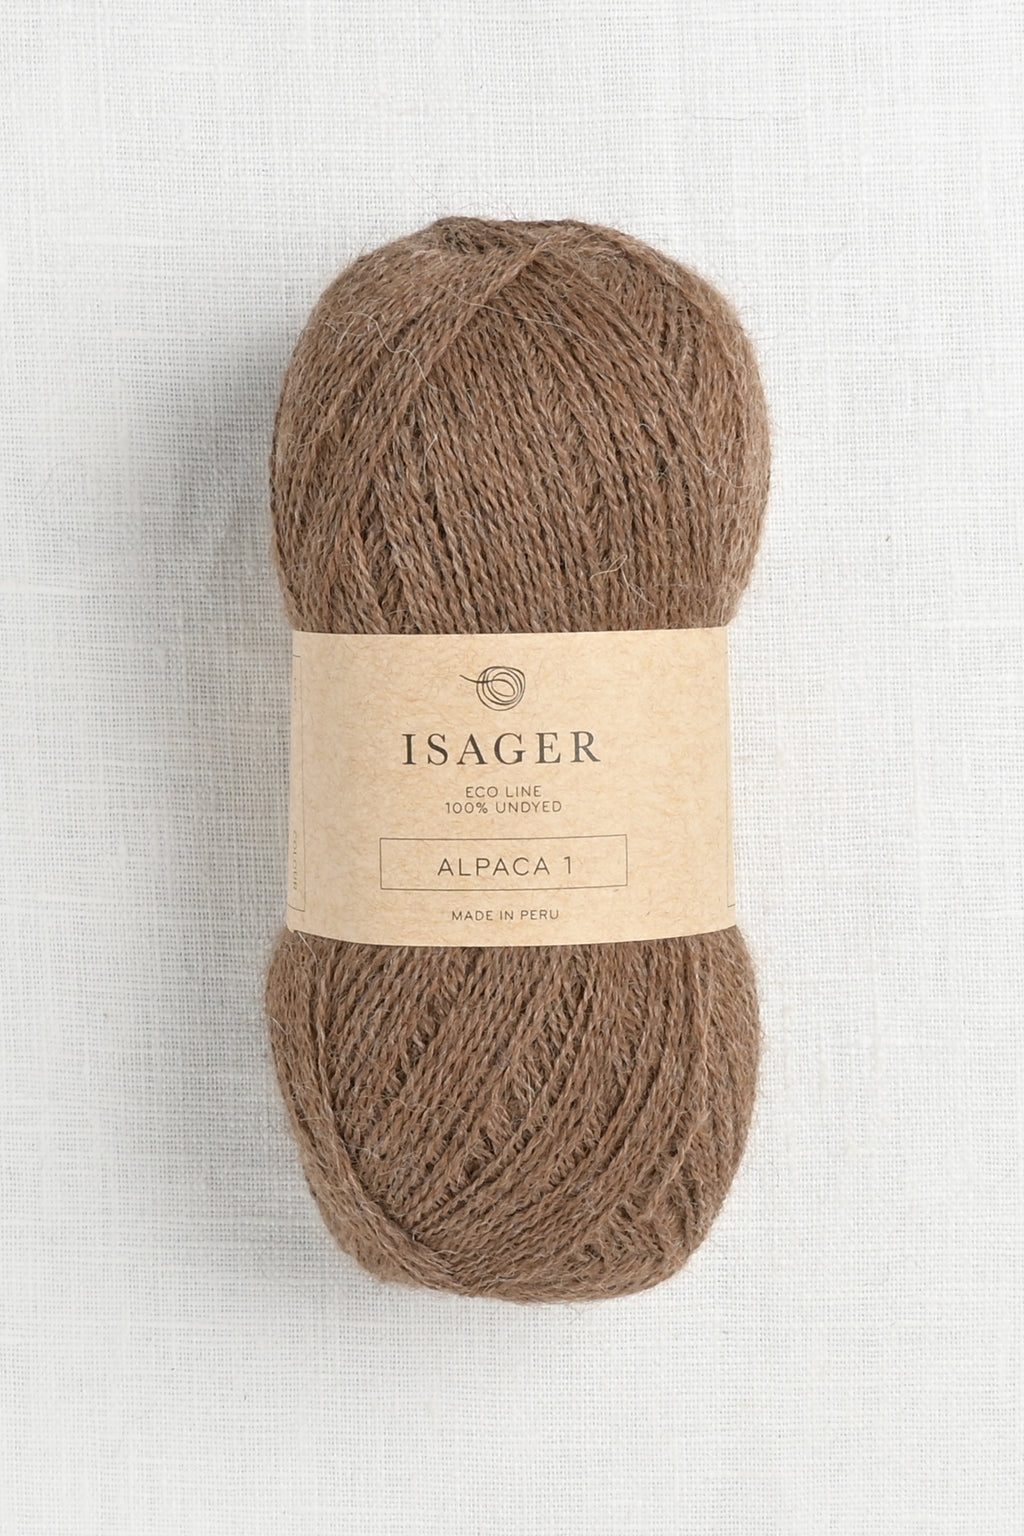 isager alpaca 1 e8s chestnut heather undyed